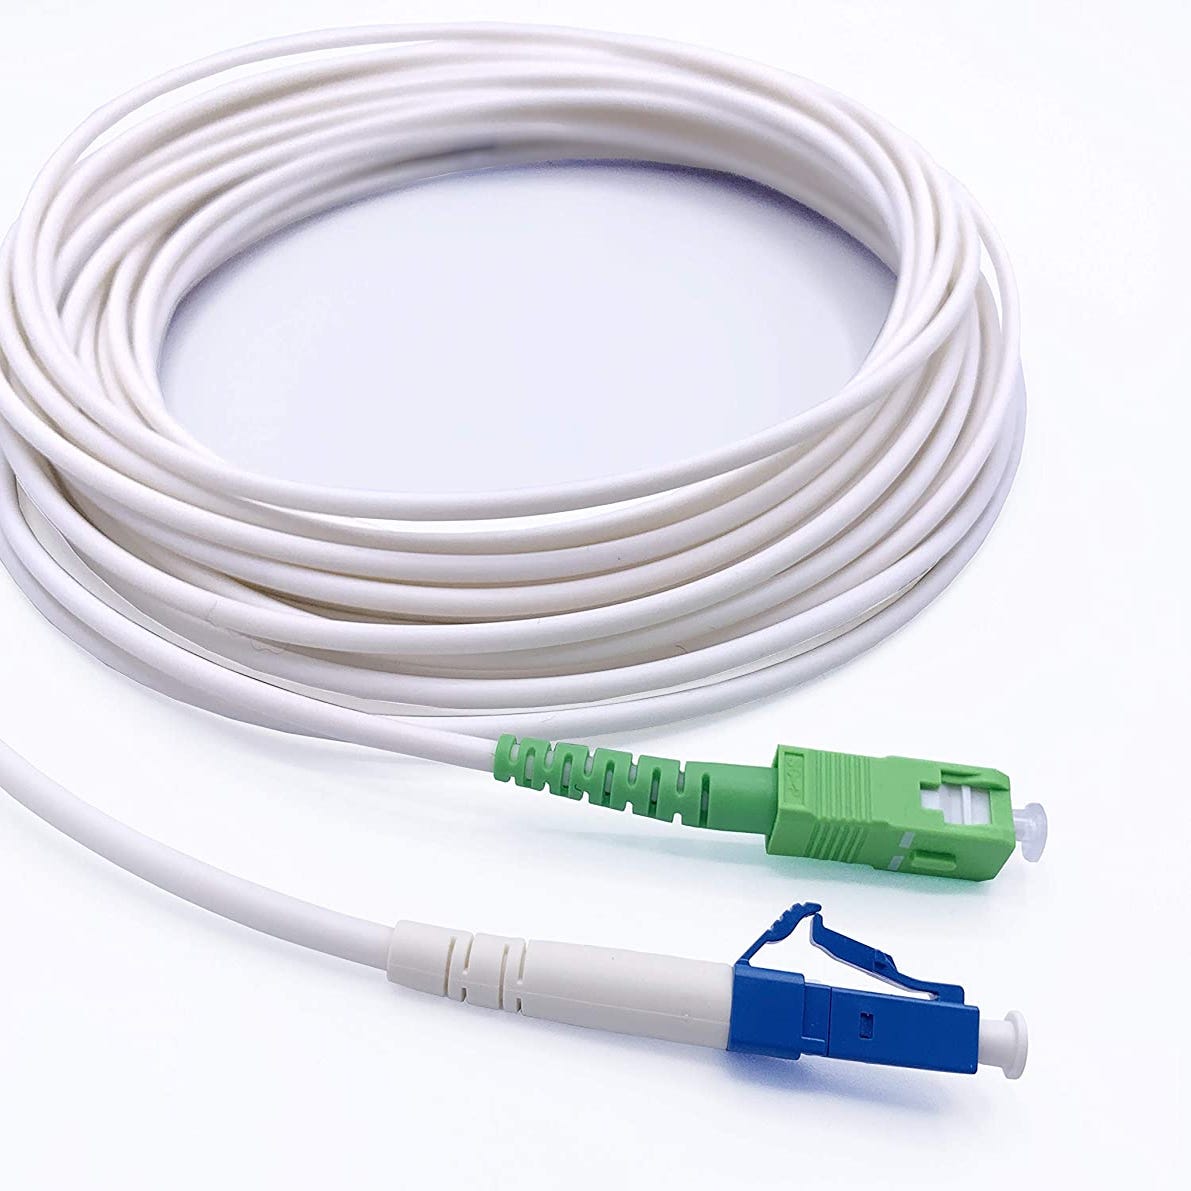 Câble fibre optique, 3m, Orange/SFR/Bouygues, sc/apc, LEXMAN